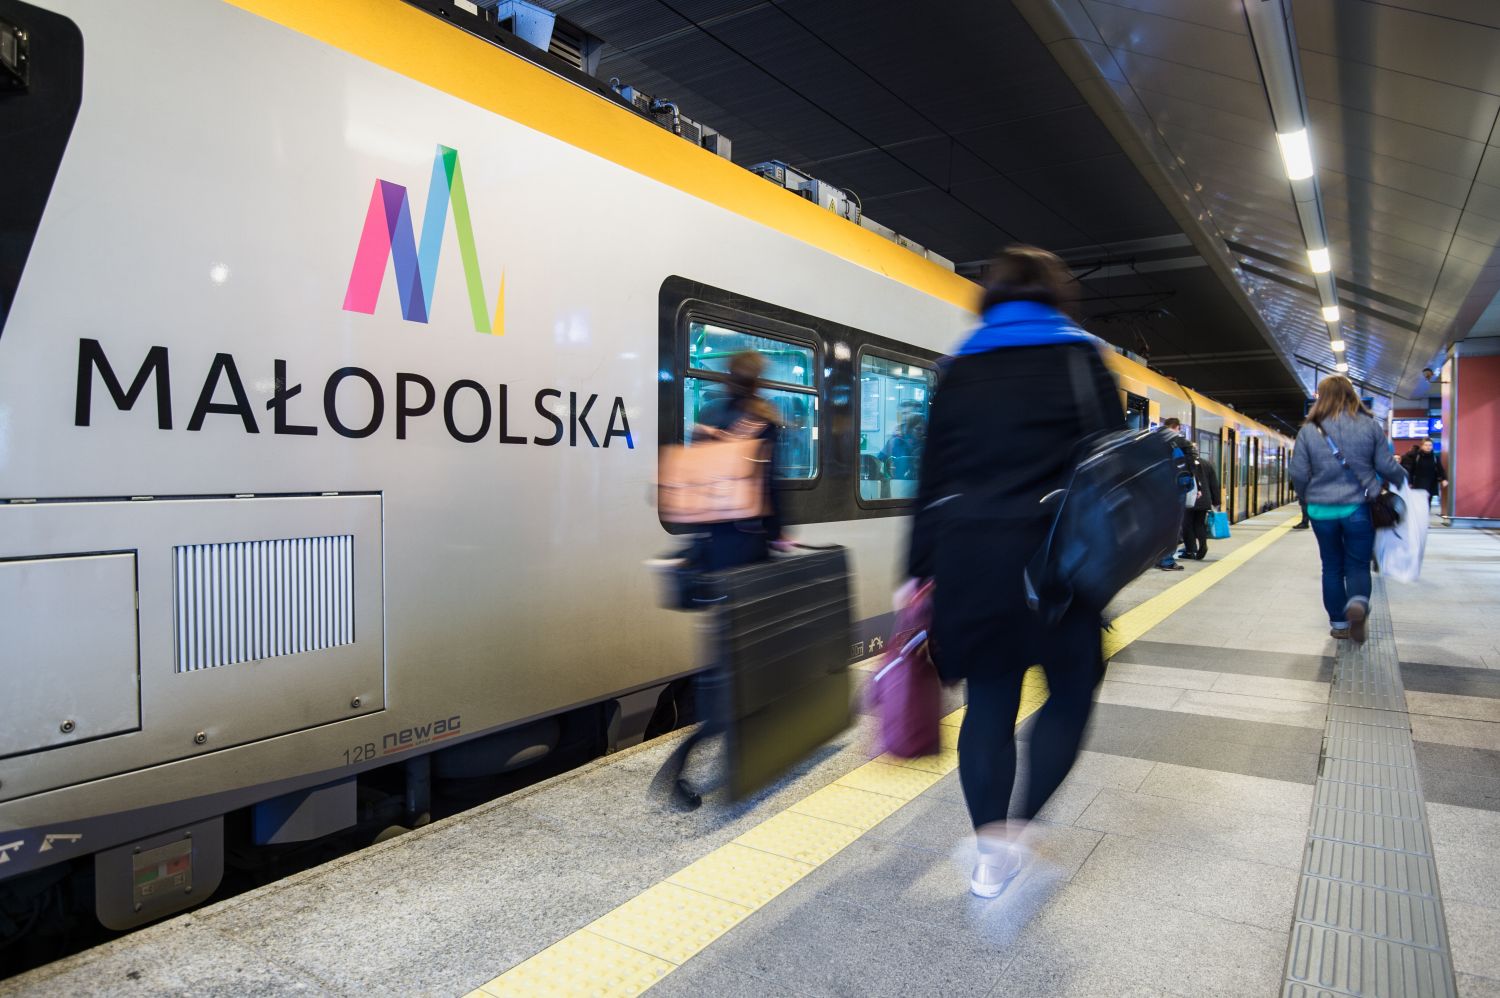 Zdjęcie przedstawia pasażerów wsiadających do pociągu na dworcu kolejowym